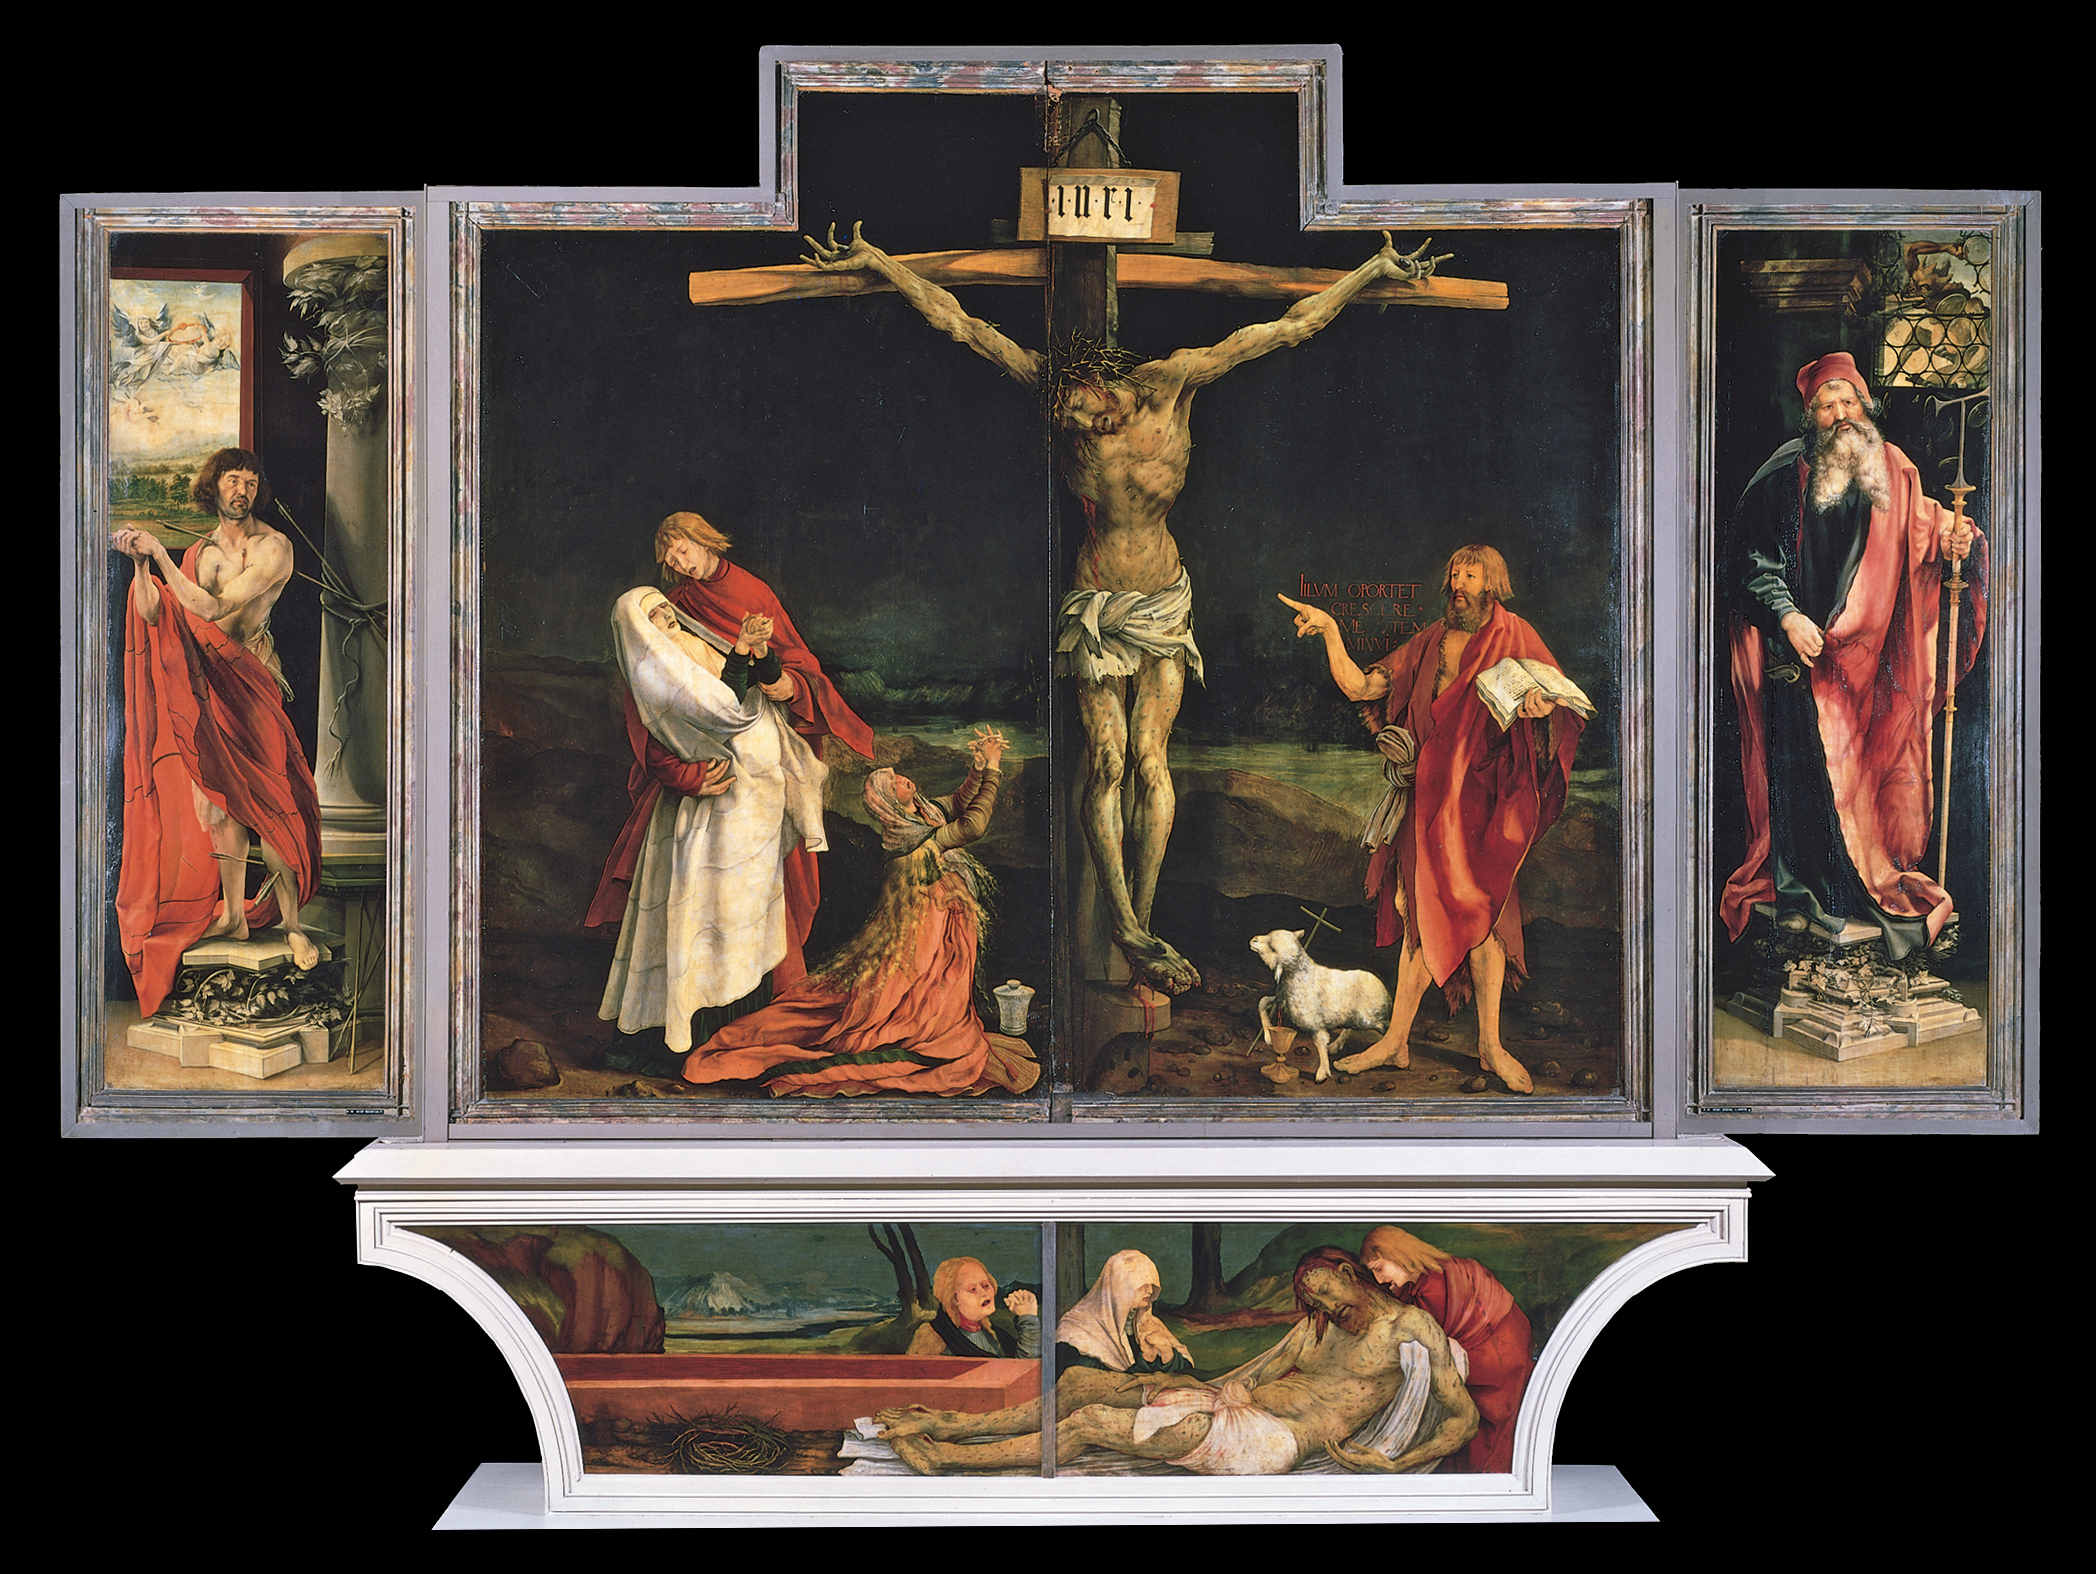 マティアス・グリューネヴァルト〈イーゼンハイム祭壇画〉1516年  ドイツ、コルマール [ウンターリンデン美術館] 